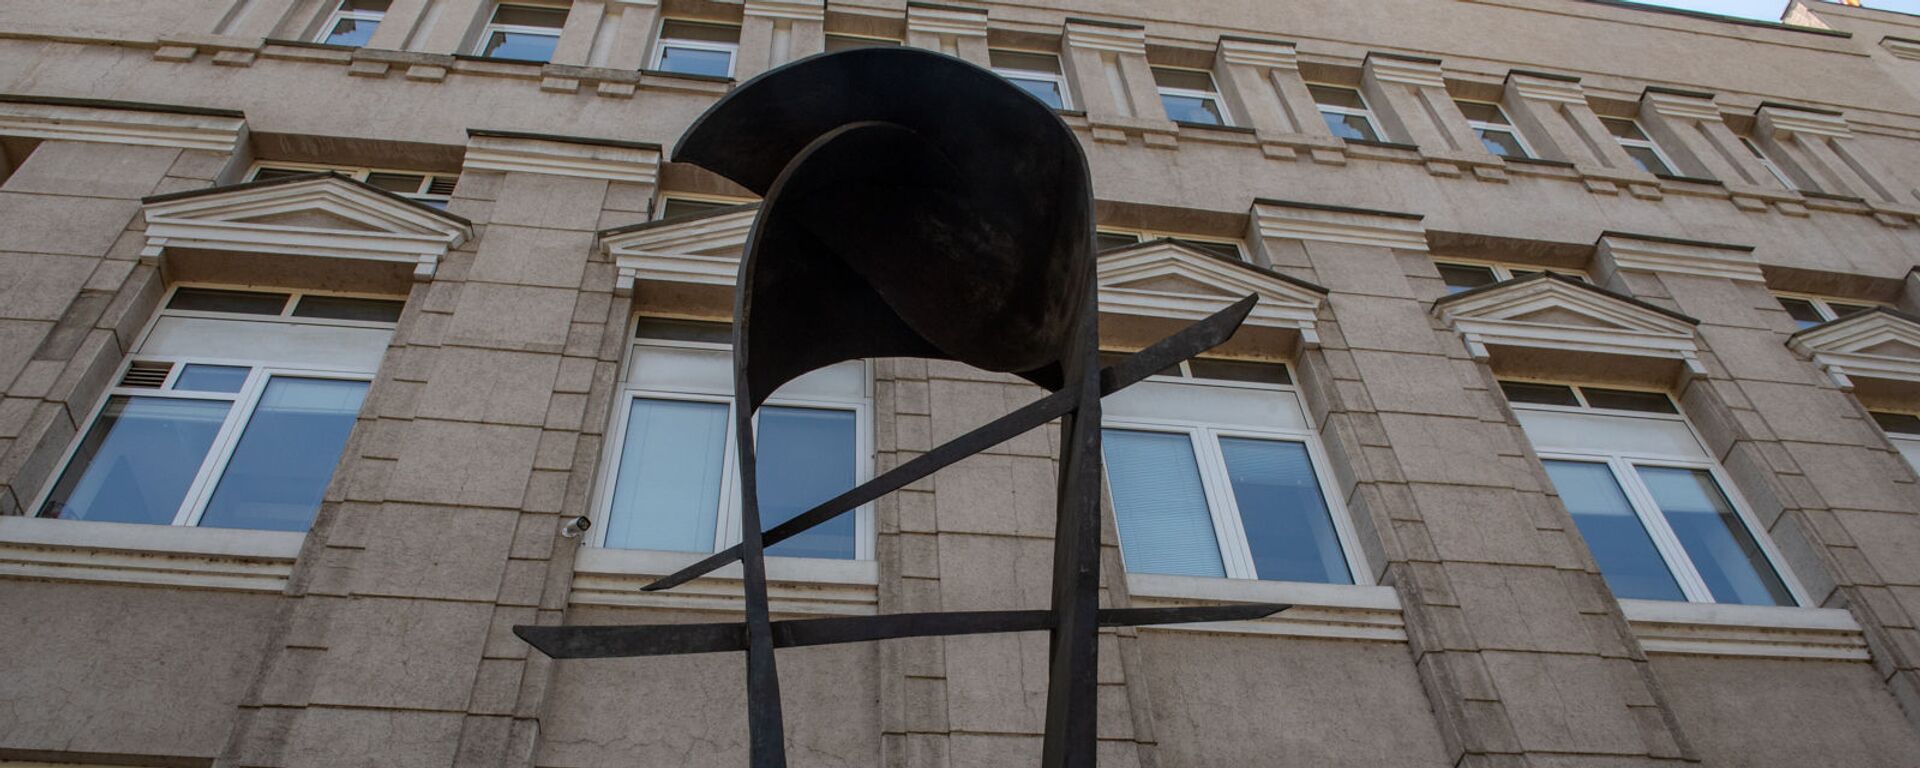 Скульптура армянскому драму перед зданием Центрального Банка Армении - Sputnik Армения, 1920, 16.03.2021